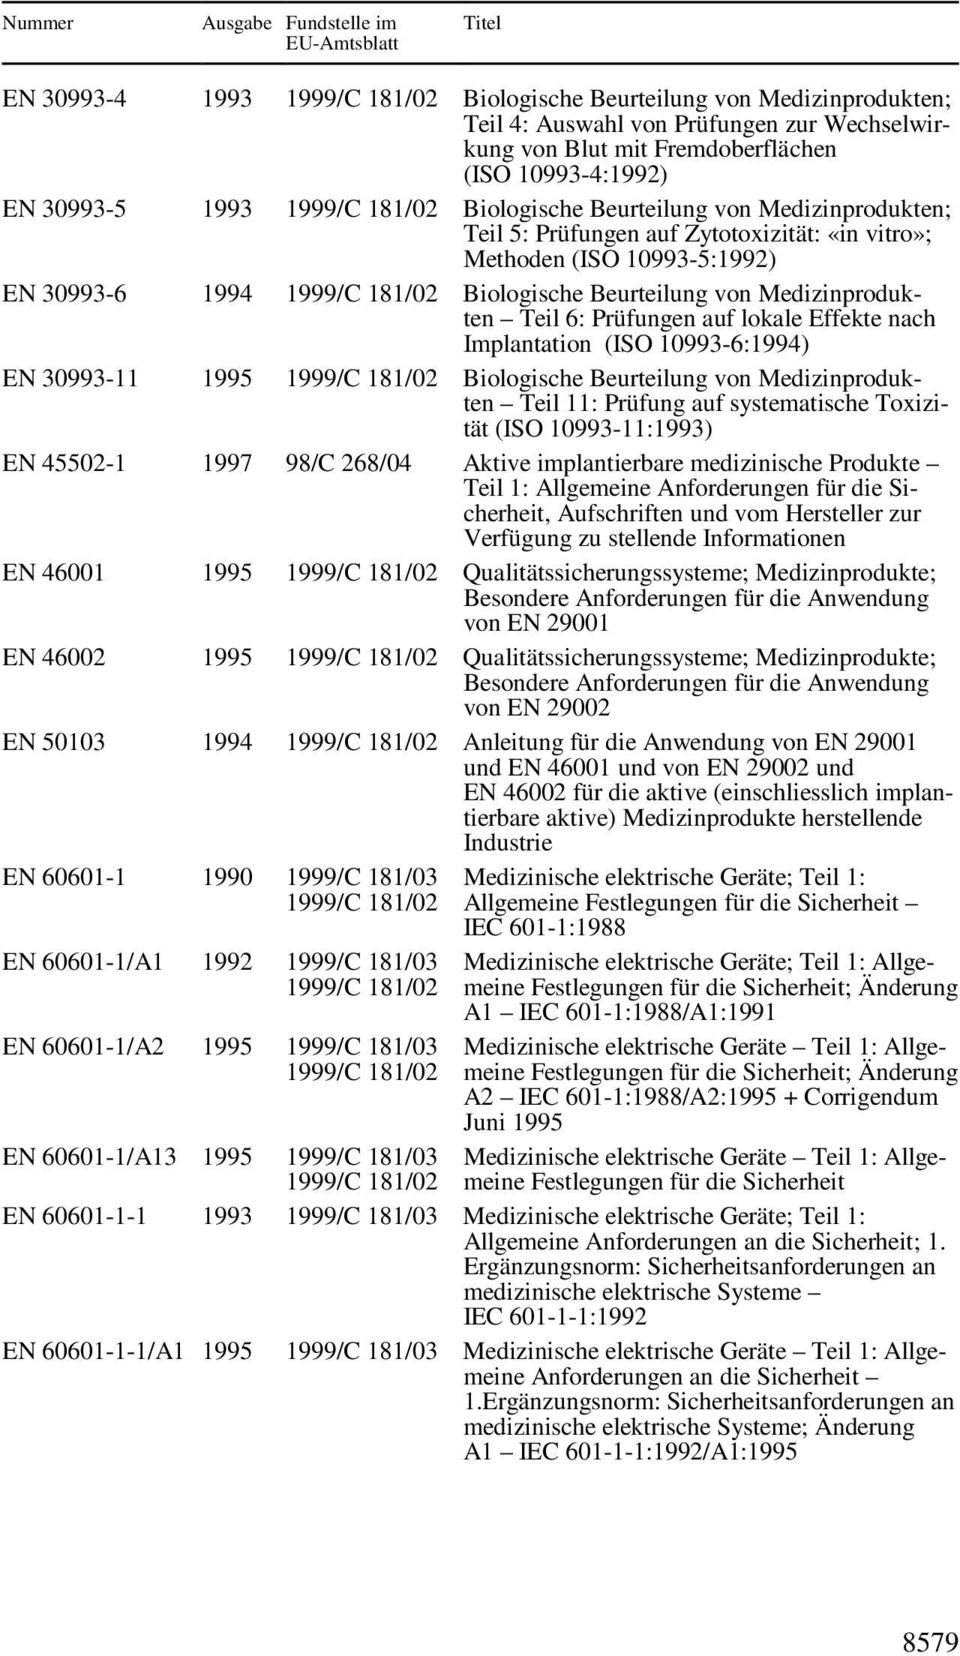 nach Implantation (ISO 10993-6:1994) EN 30993-11 1995 Biologische Beurteilung von Medizinprodukten Teil 11: Prüfung auf systematische Toxizität (ISO 10993-11:1993) EN 45502-1 1997 98/C 268/04 Aktive